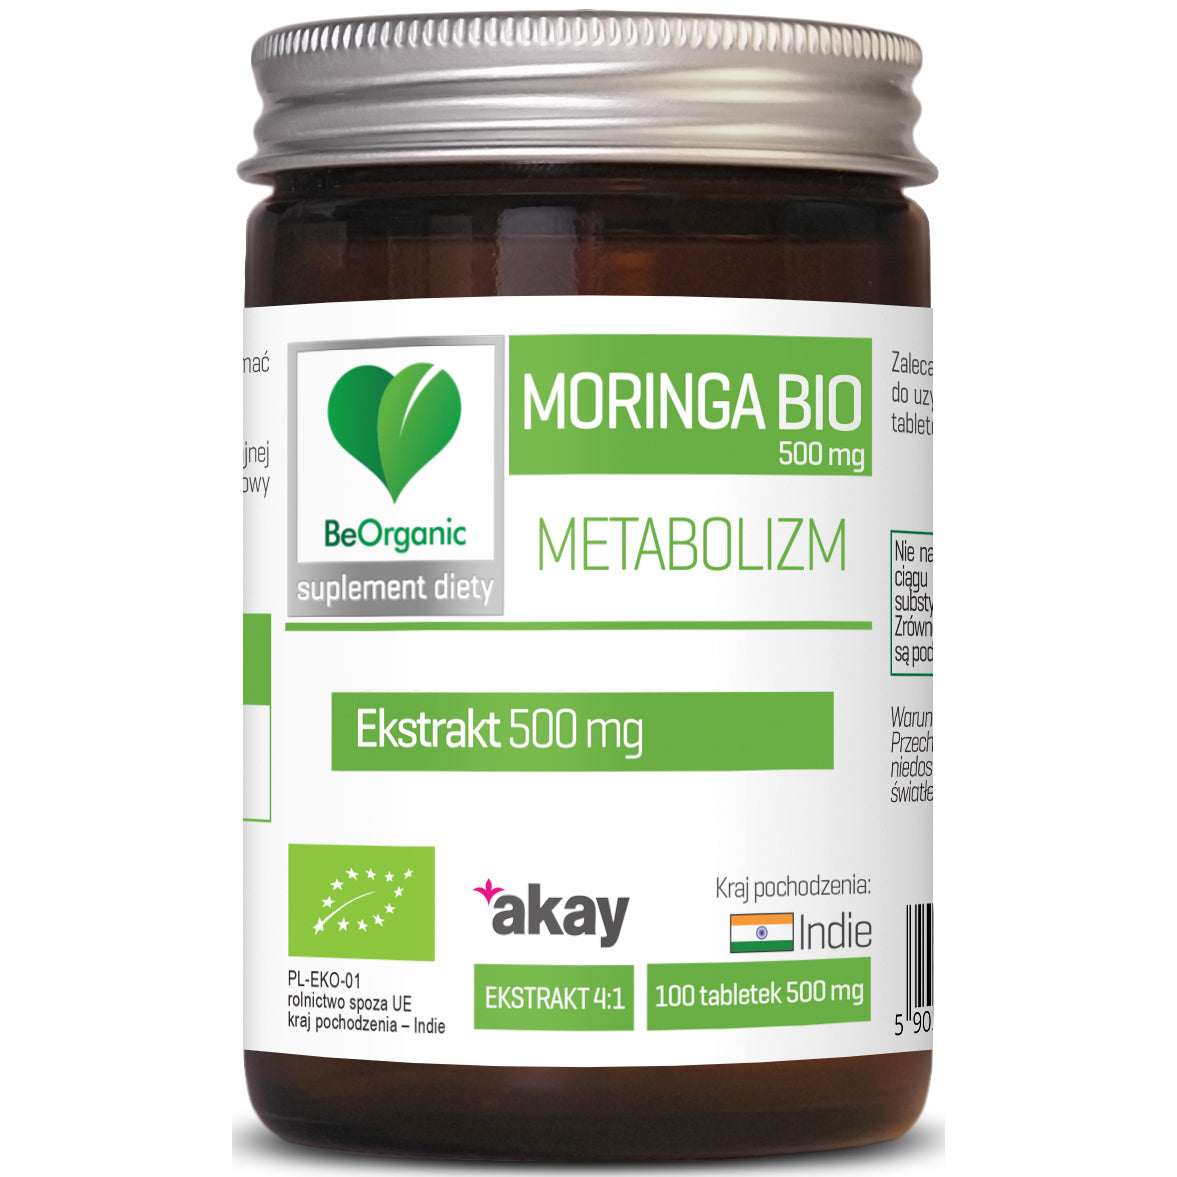 BeOrganic Moringa 500mg, 100 tablets